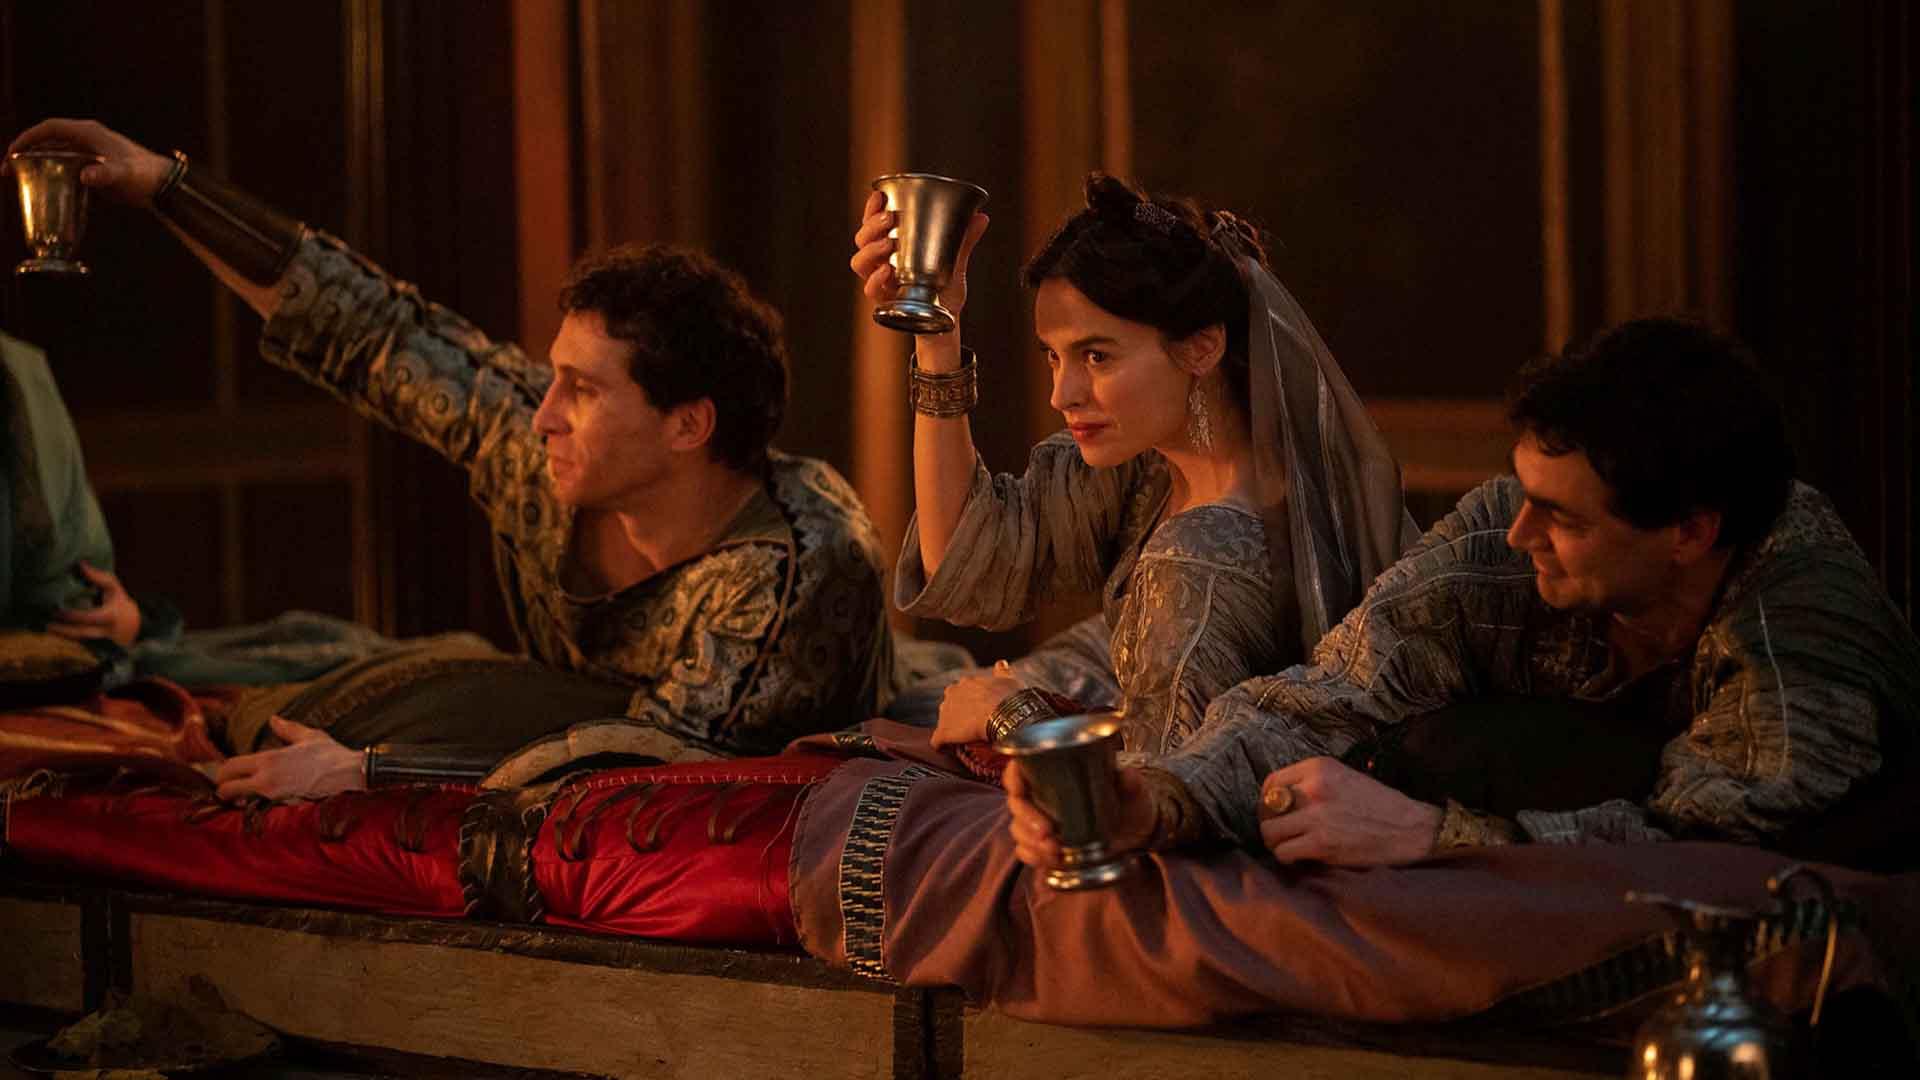 کاسیا اسماتنیک به همراه دو بازیگر دیگر در حال خوردن نوشیدنی در سریال Domina